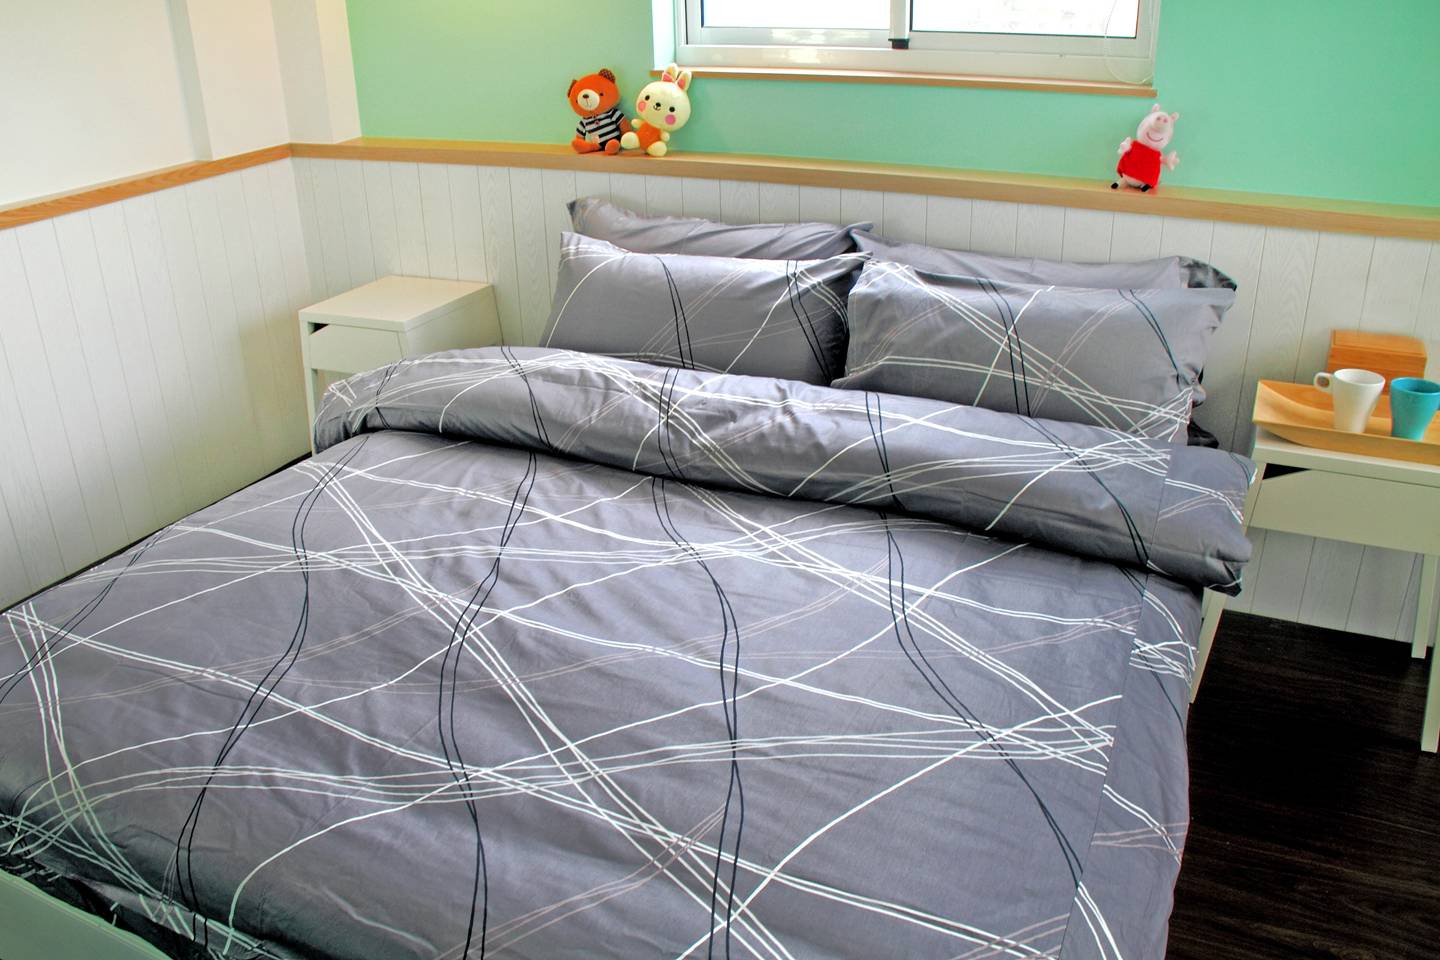 床包兩用被組 / 雙人 印花設計款 / 幾何線條 100%精梳棉  雙人床包兩用被組